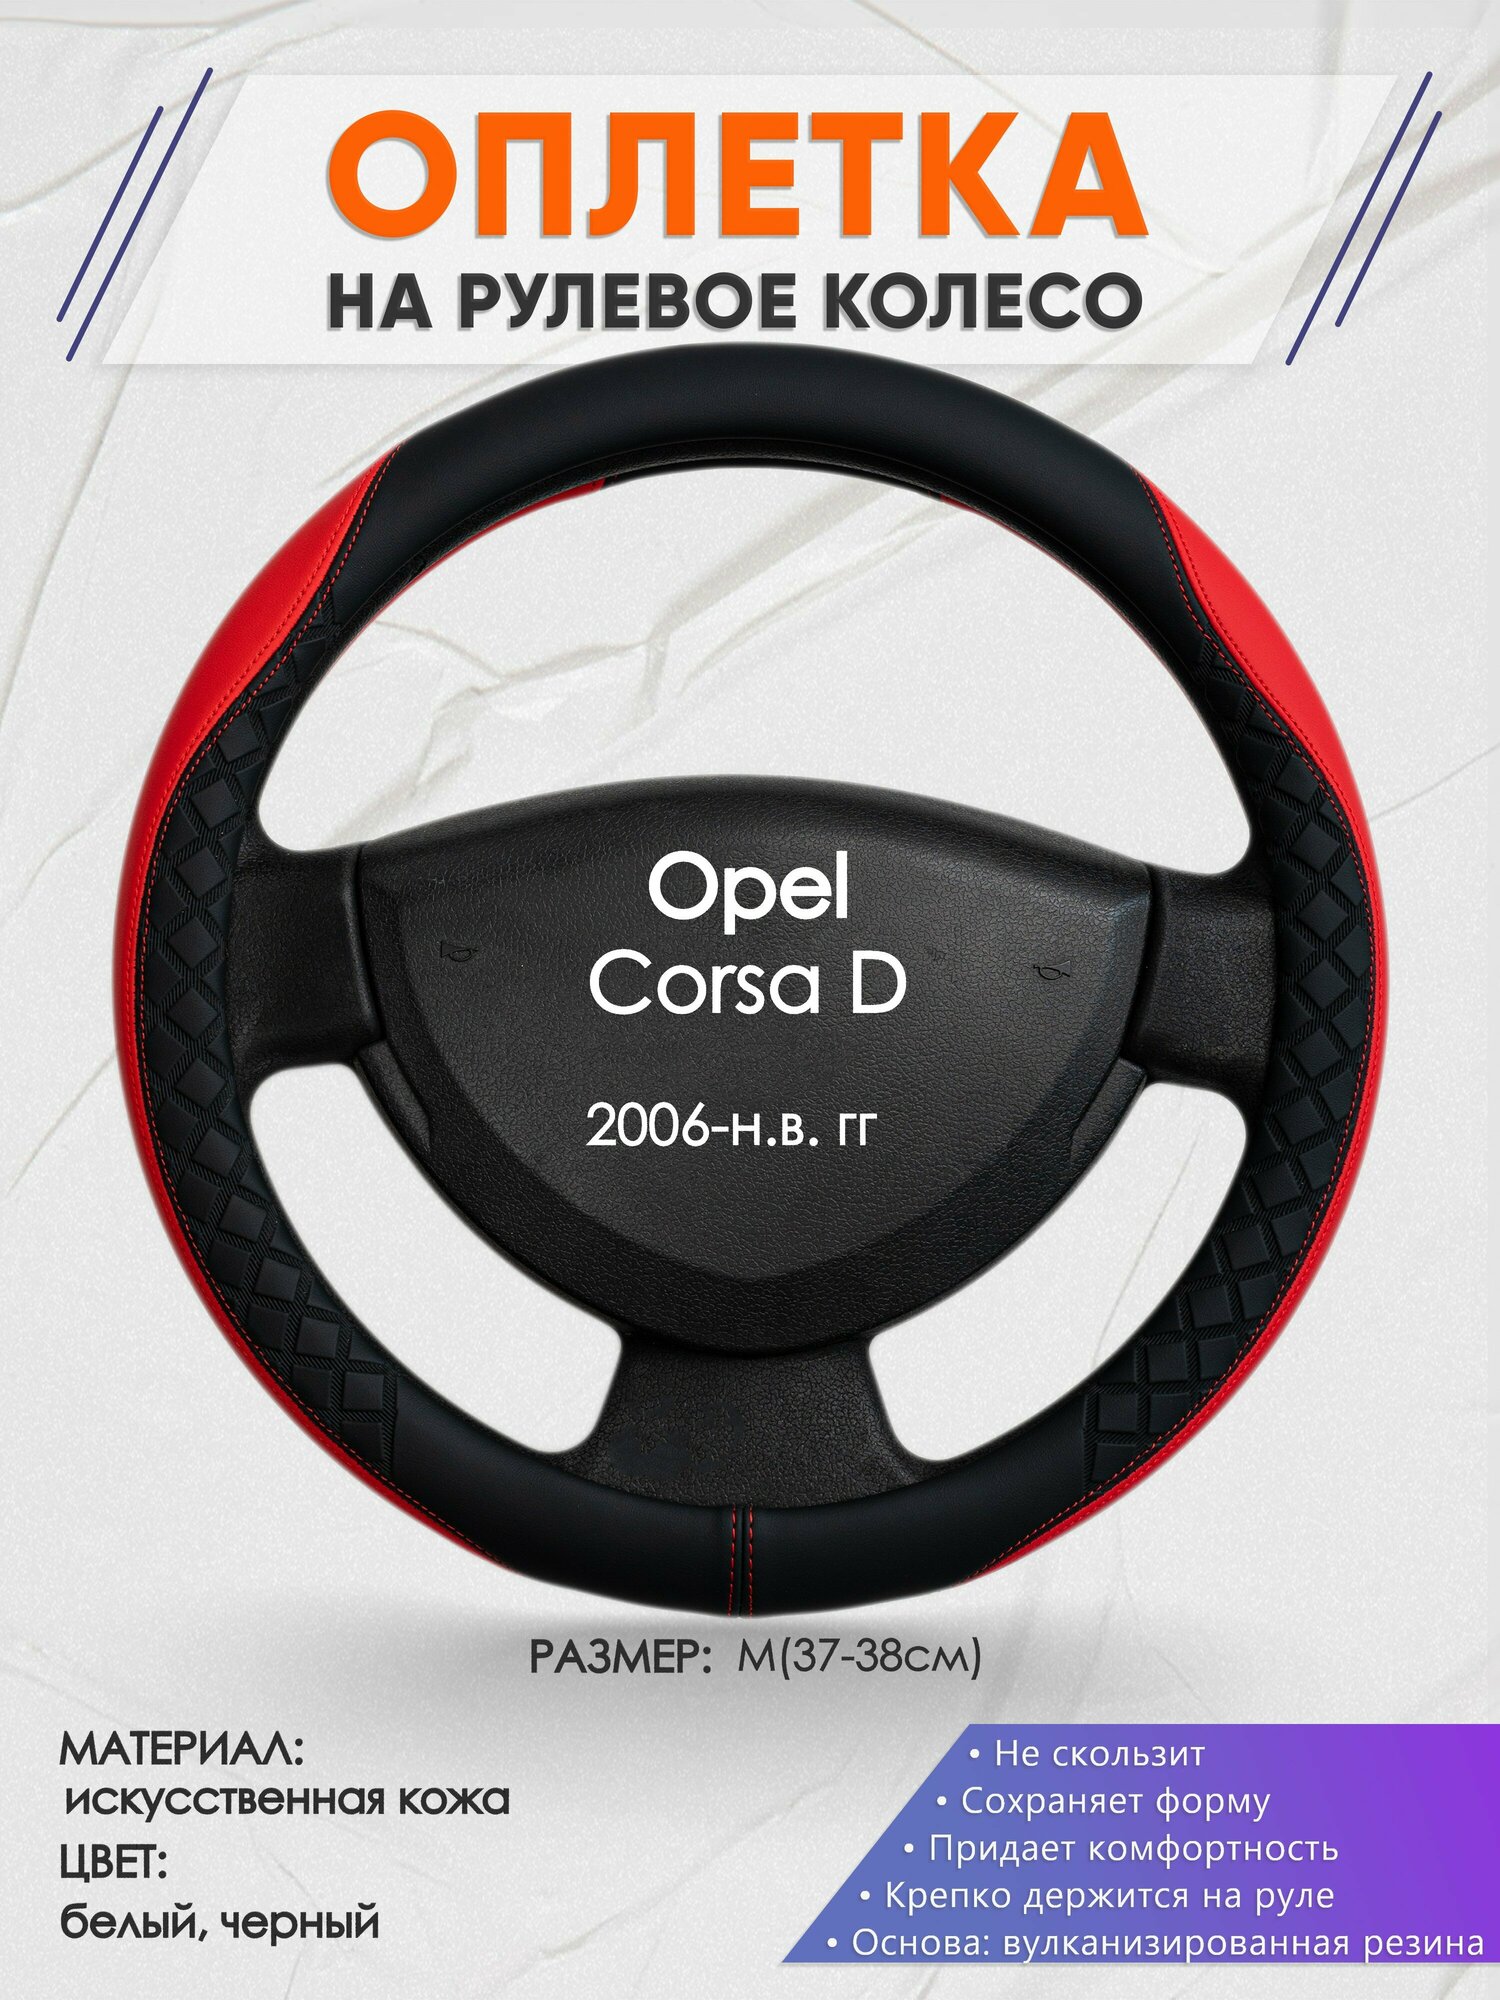 Оплетка на руль для Opel Corsa D(Опель Корса Д) 2006-н. в M(37-38см) Искусственная кожа 69